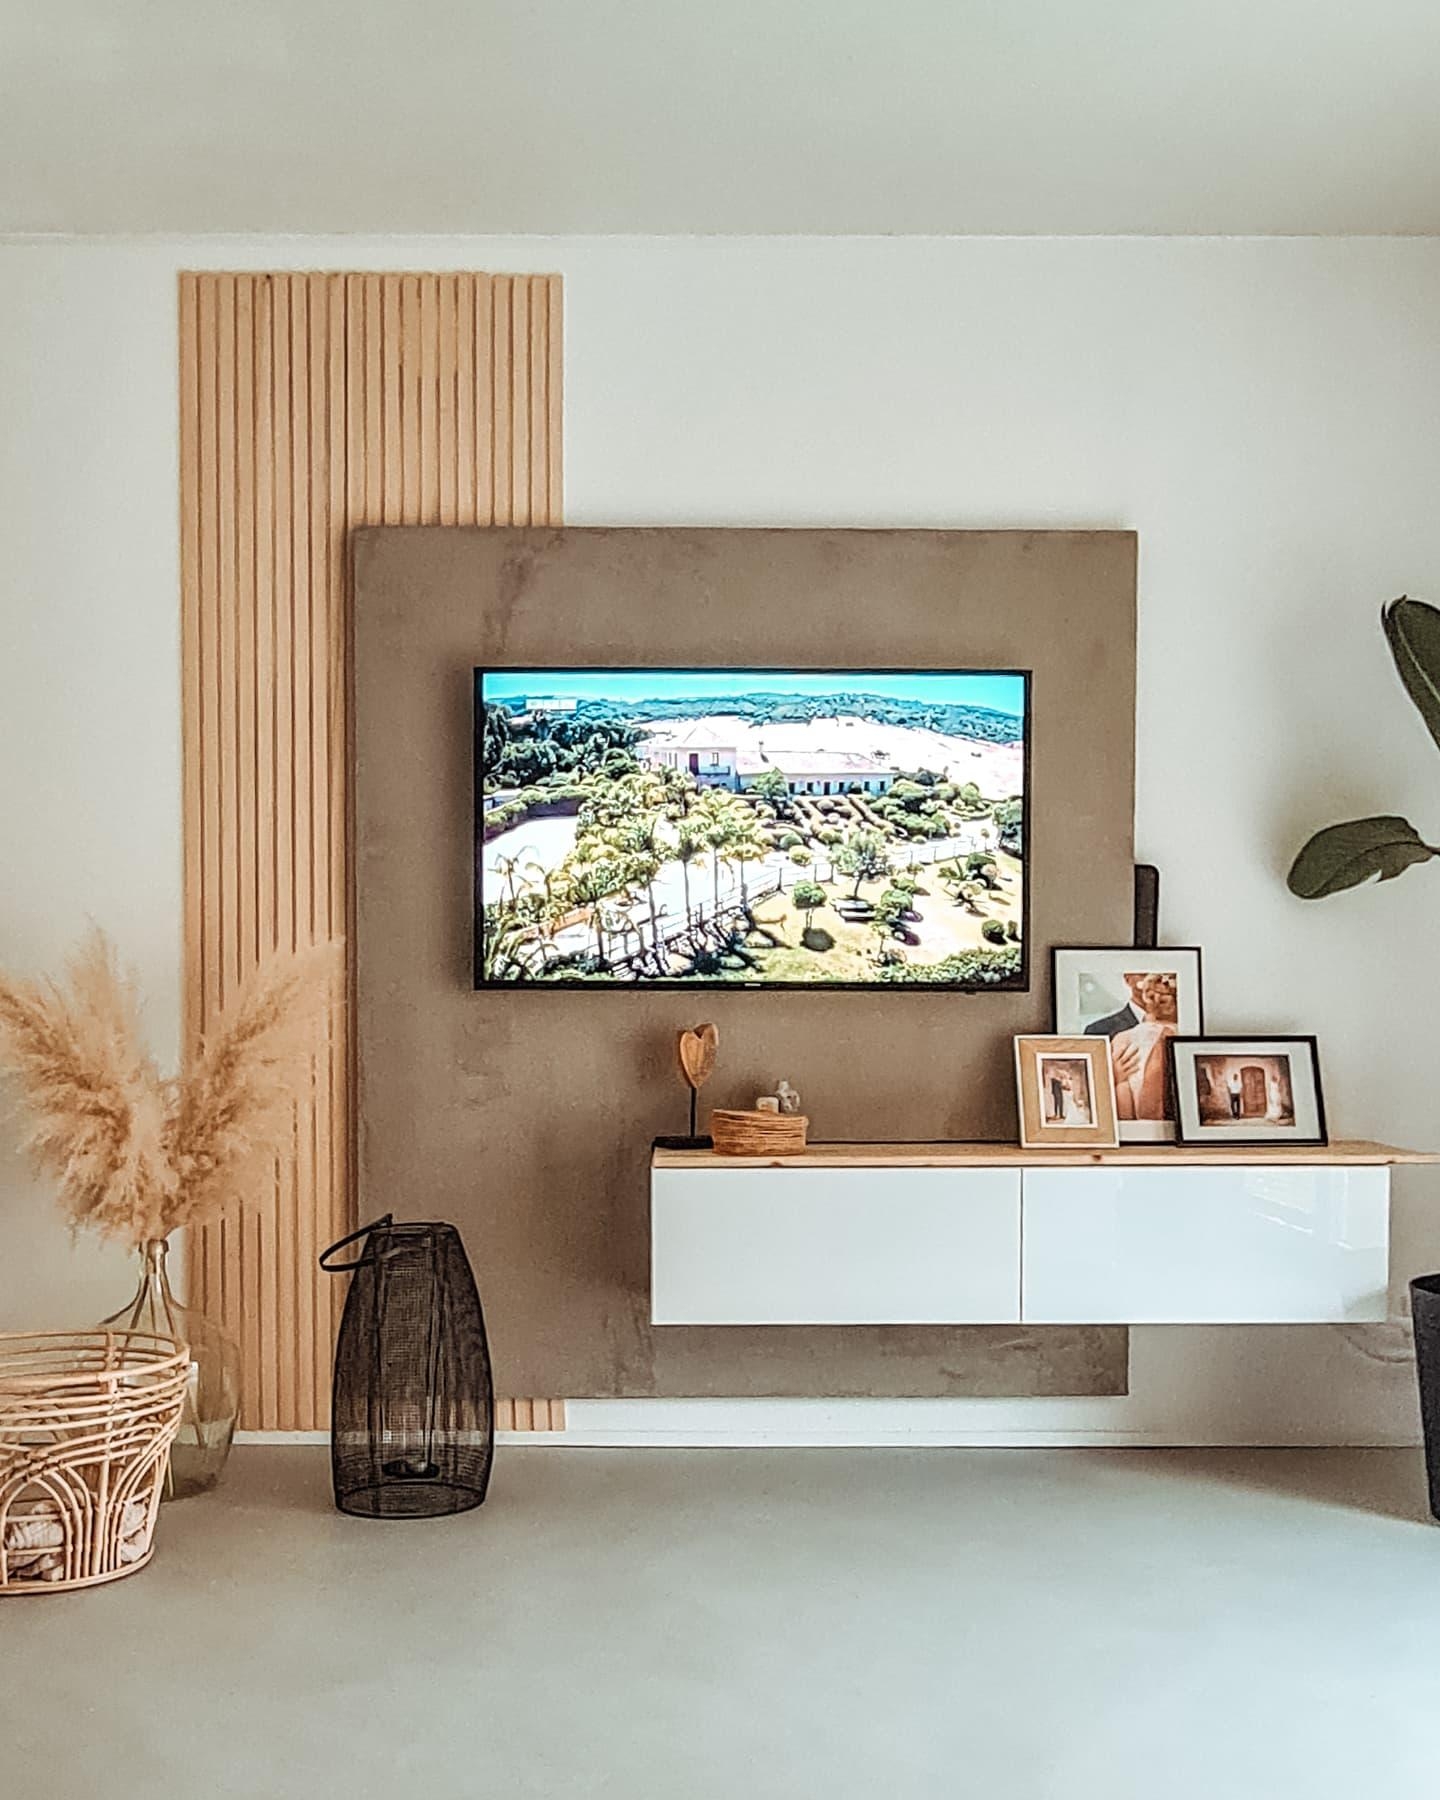 Wir haben unsere DIY TV-Wand ein bisschen verändert und zusätzlich Holzleisten angebracht. #tvwand #wohnzimmer #paneel